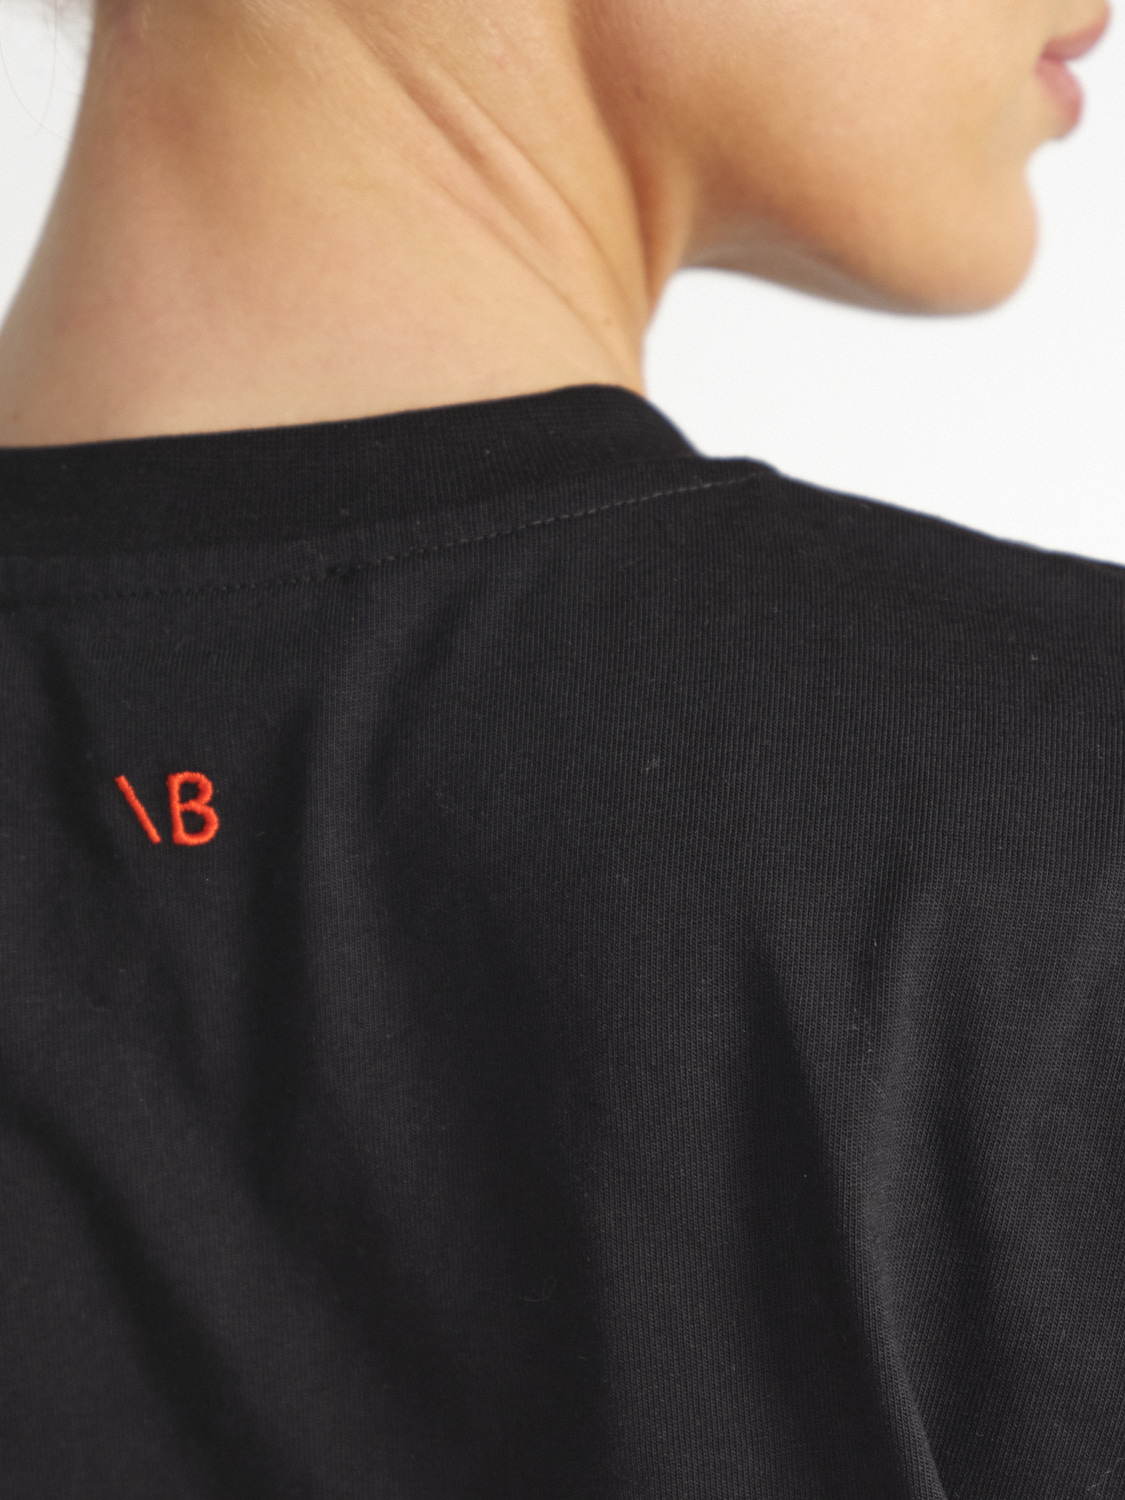 Victoria Beckham Slogan – Oversized Baumwoll T-Shirt   schwarz XS